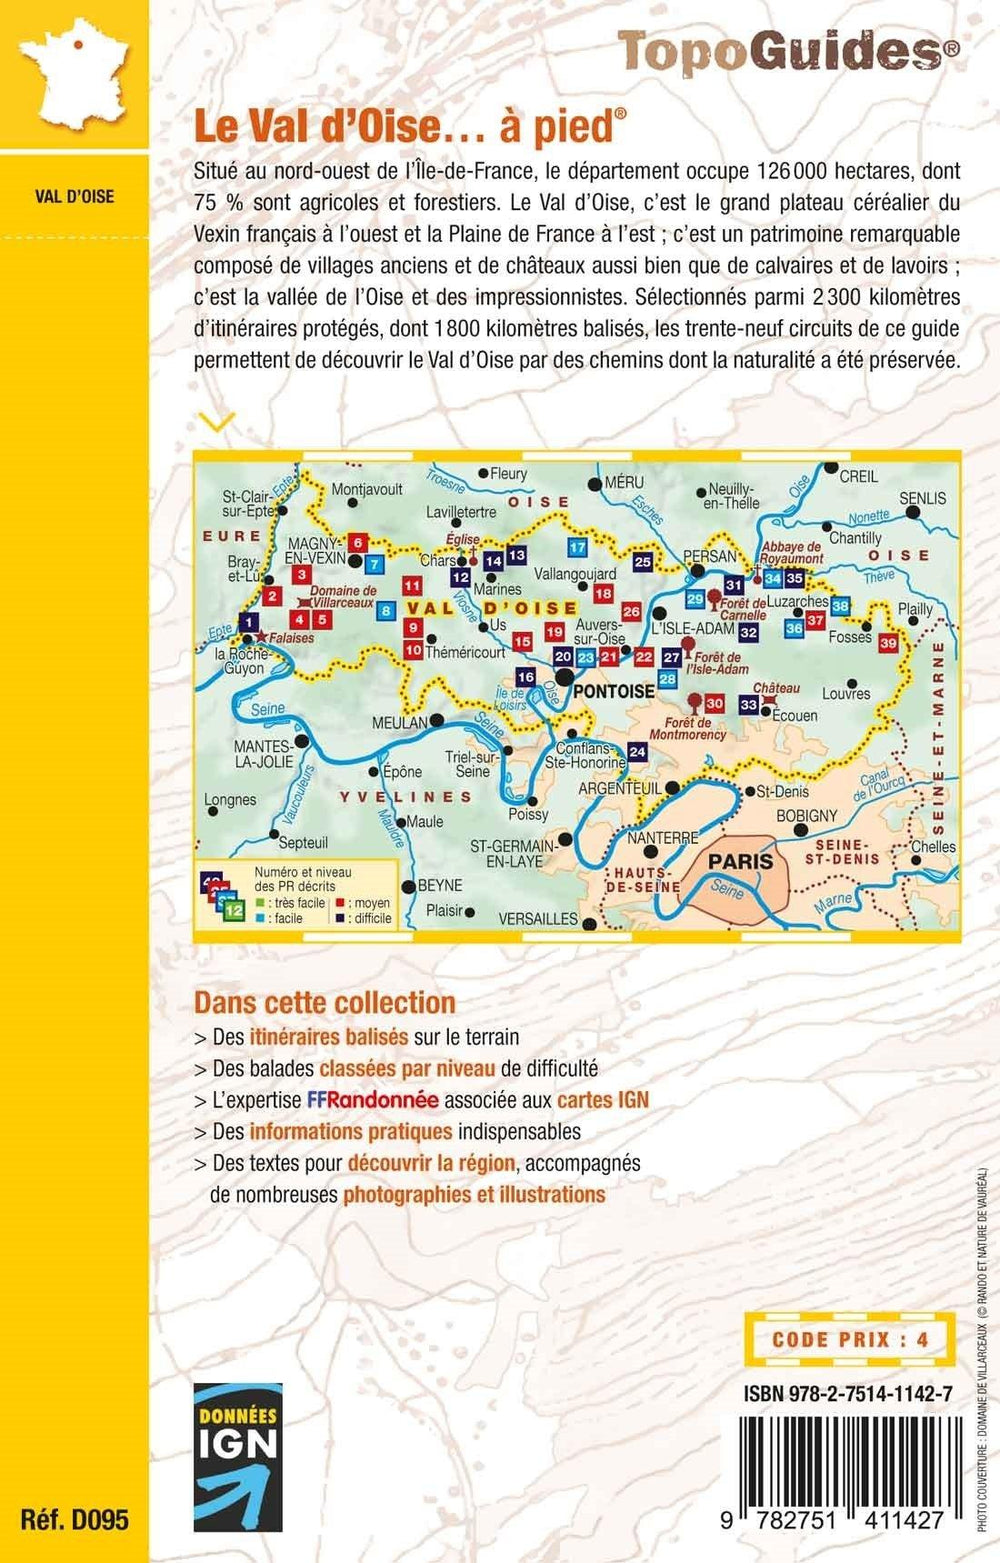 Topoguide de randonnée - Le Val d'Oise à pied | FFR guide de randonnée FFR - Fédération Française de Randonnée 